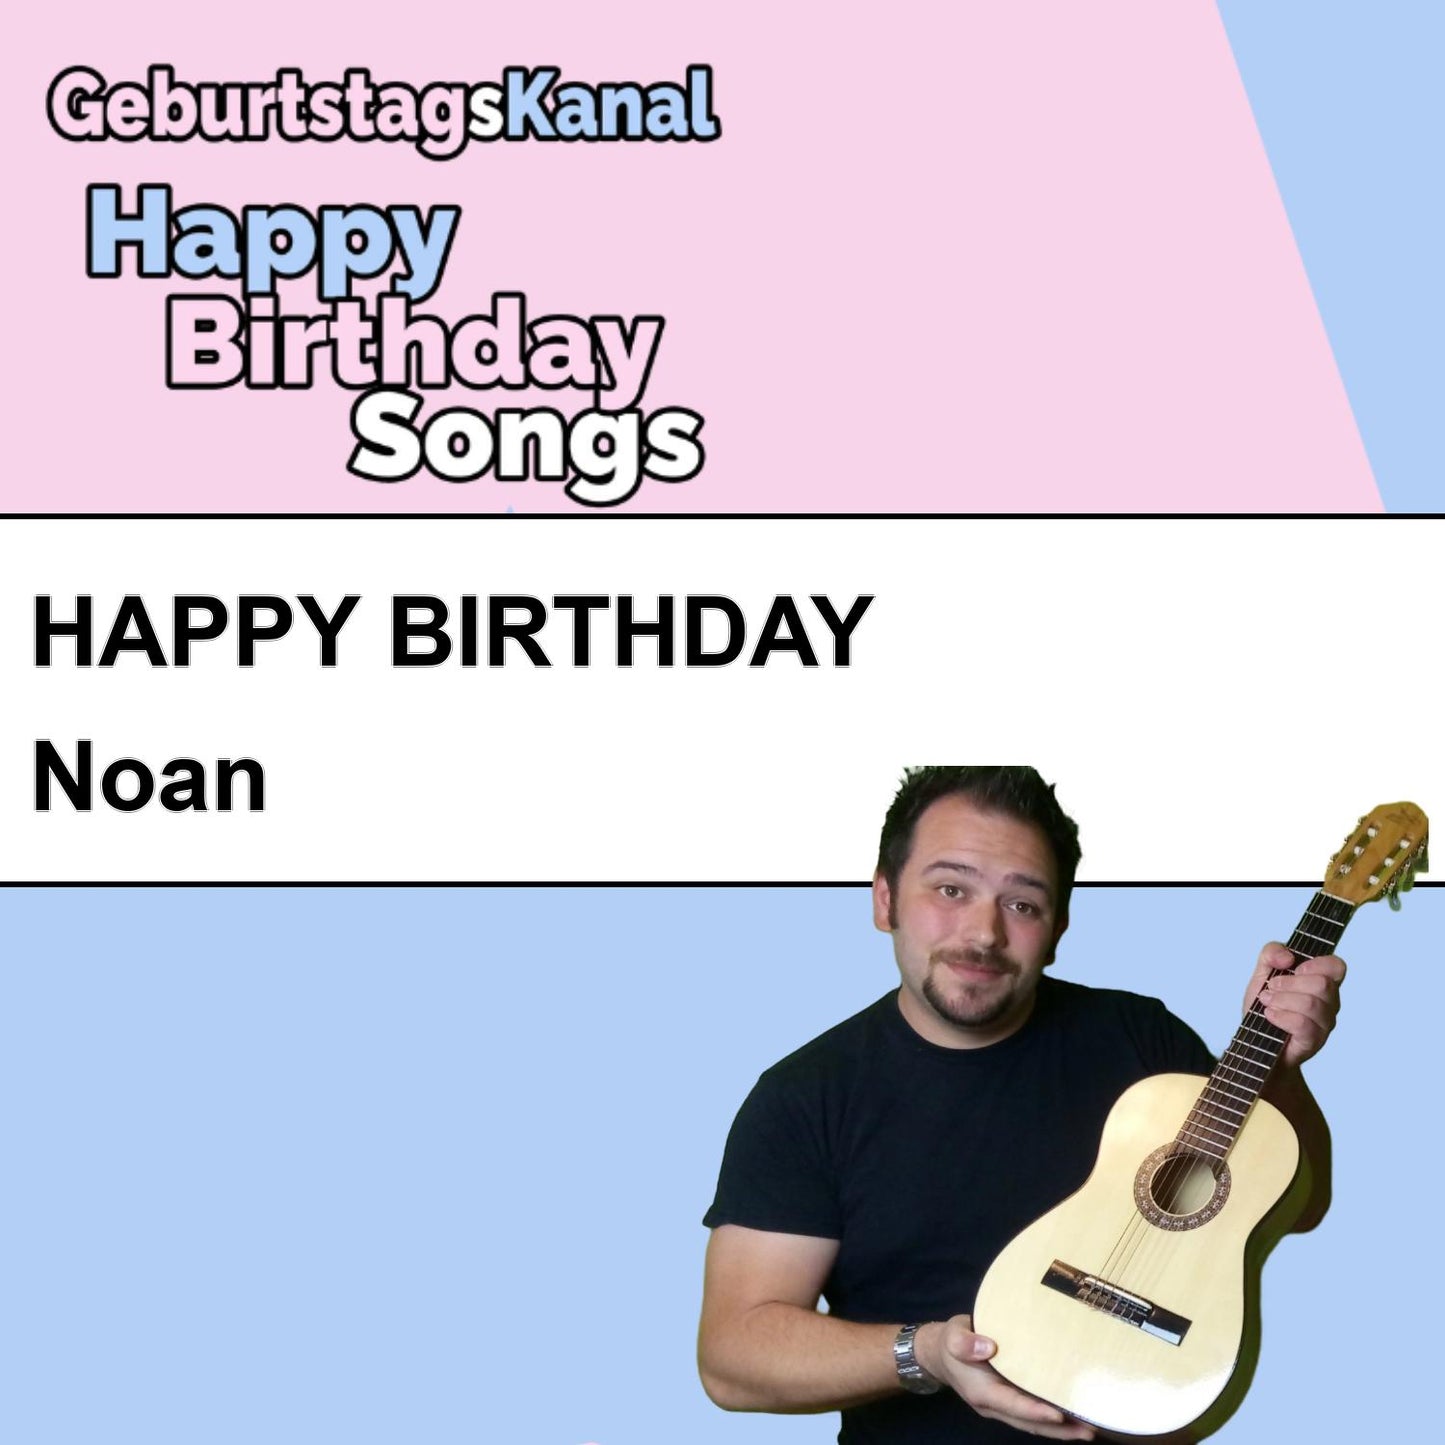 Produktbild Happy Birthday to you Noan mit Wunschgrußbotschaft